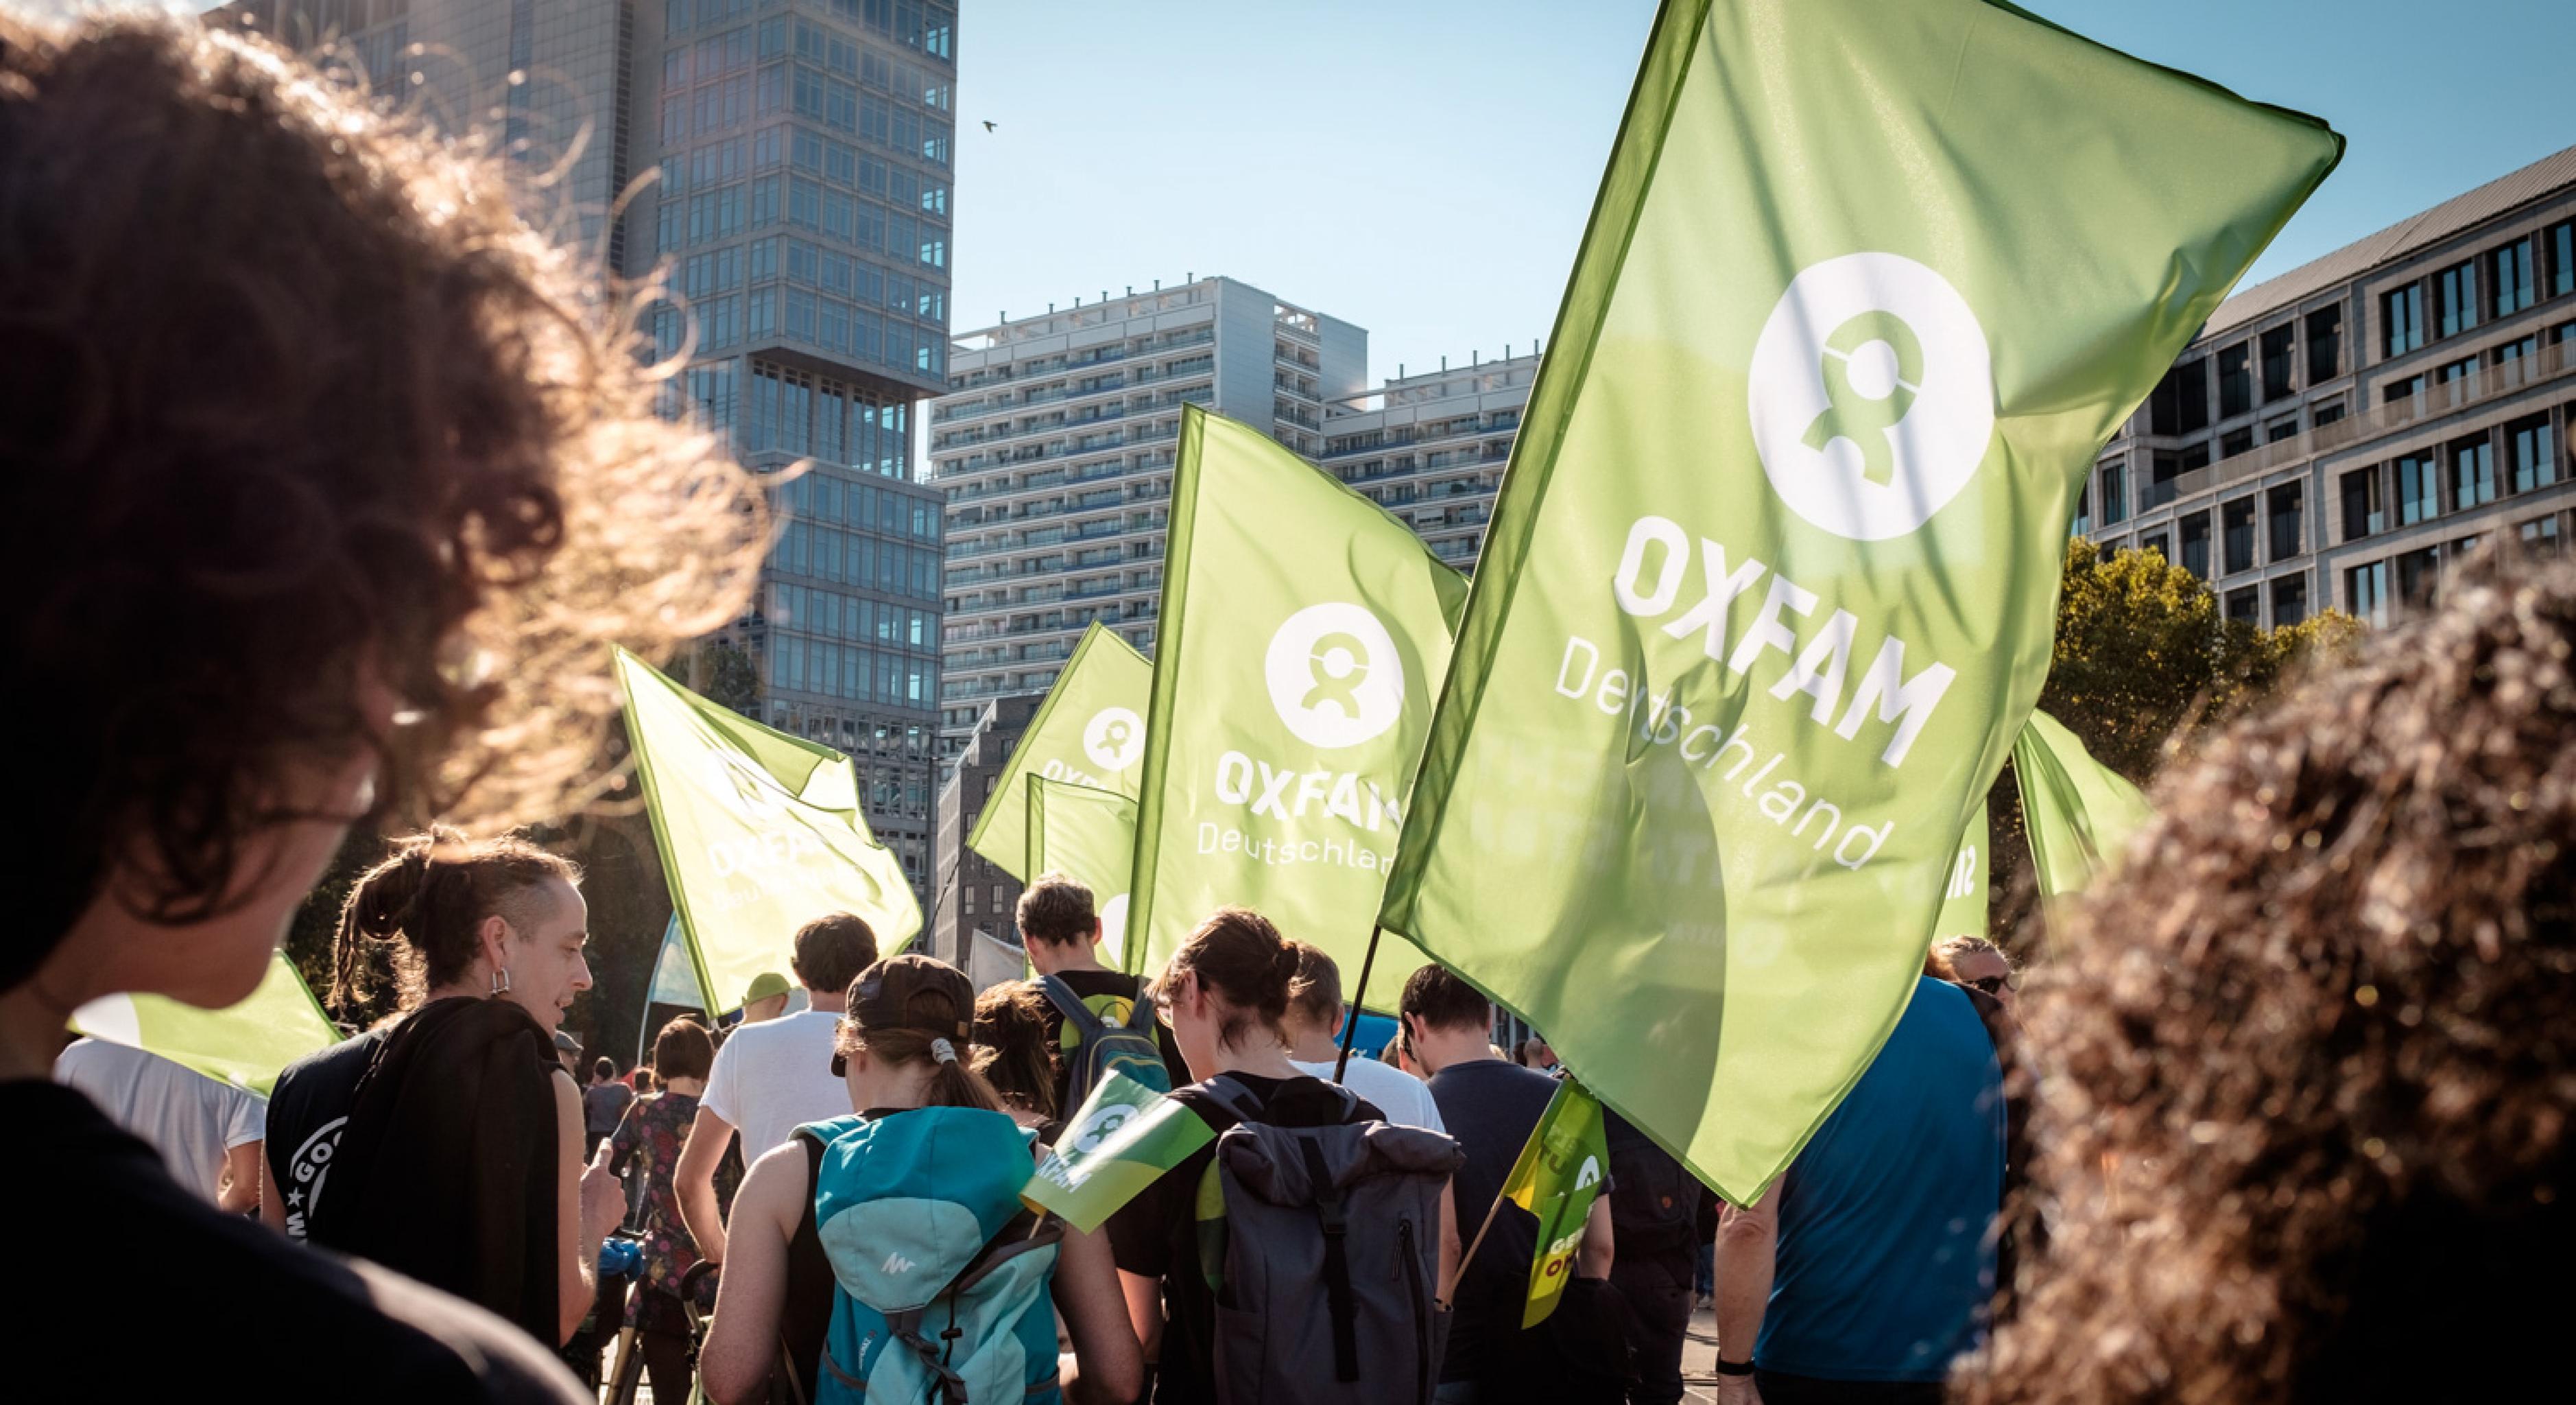 Oxfam-Fahnen auf einer Demonstration